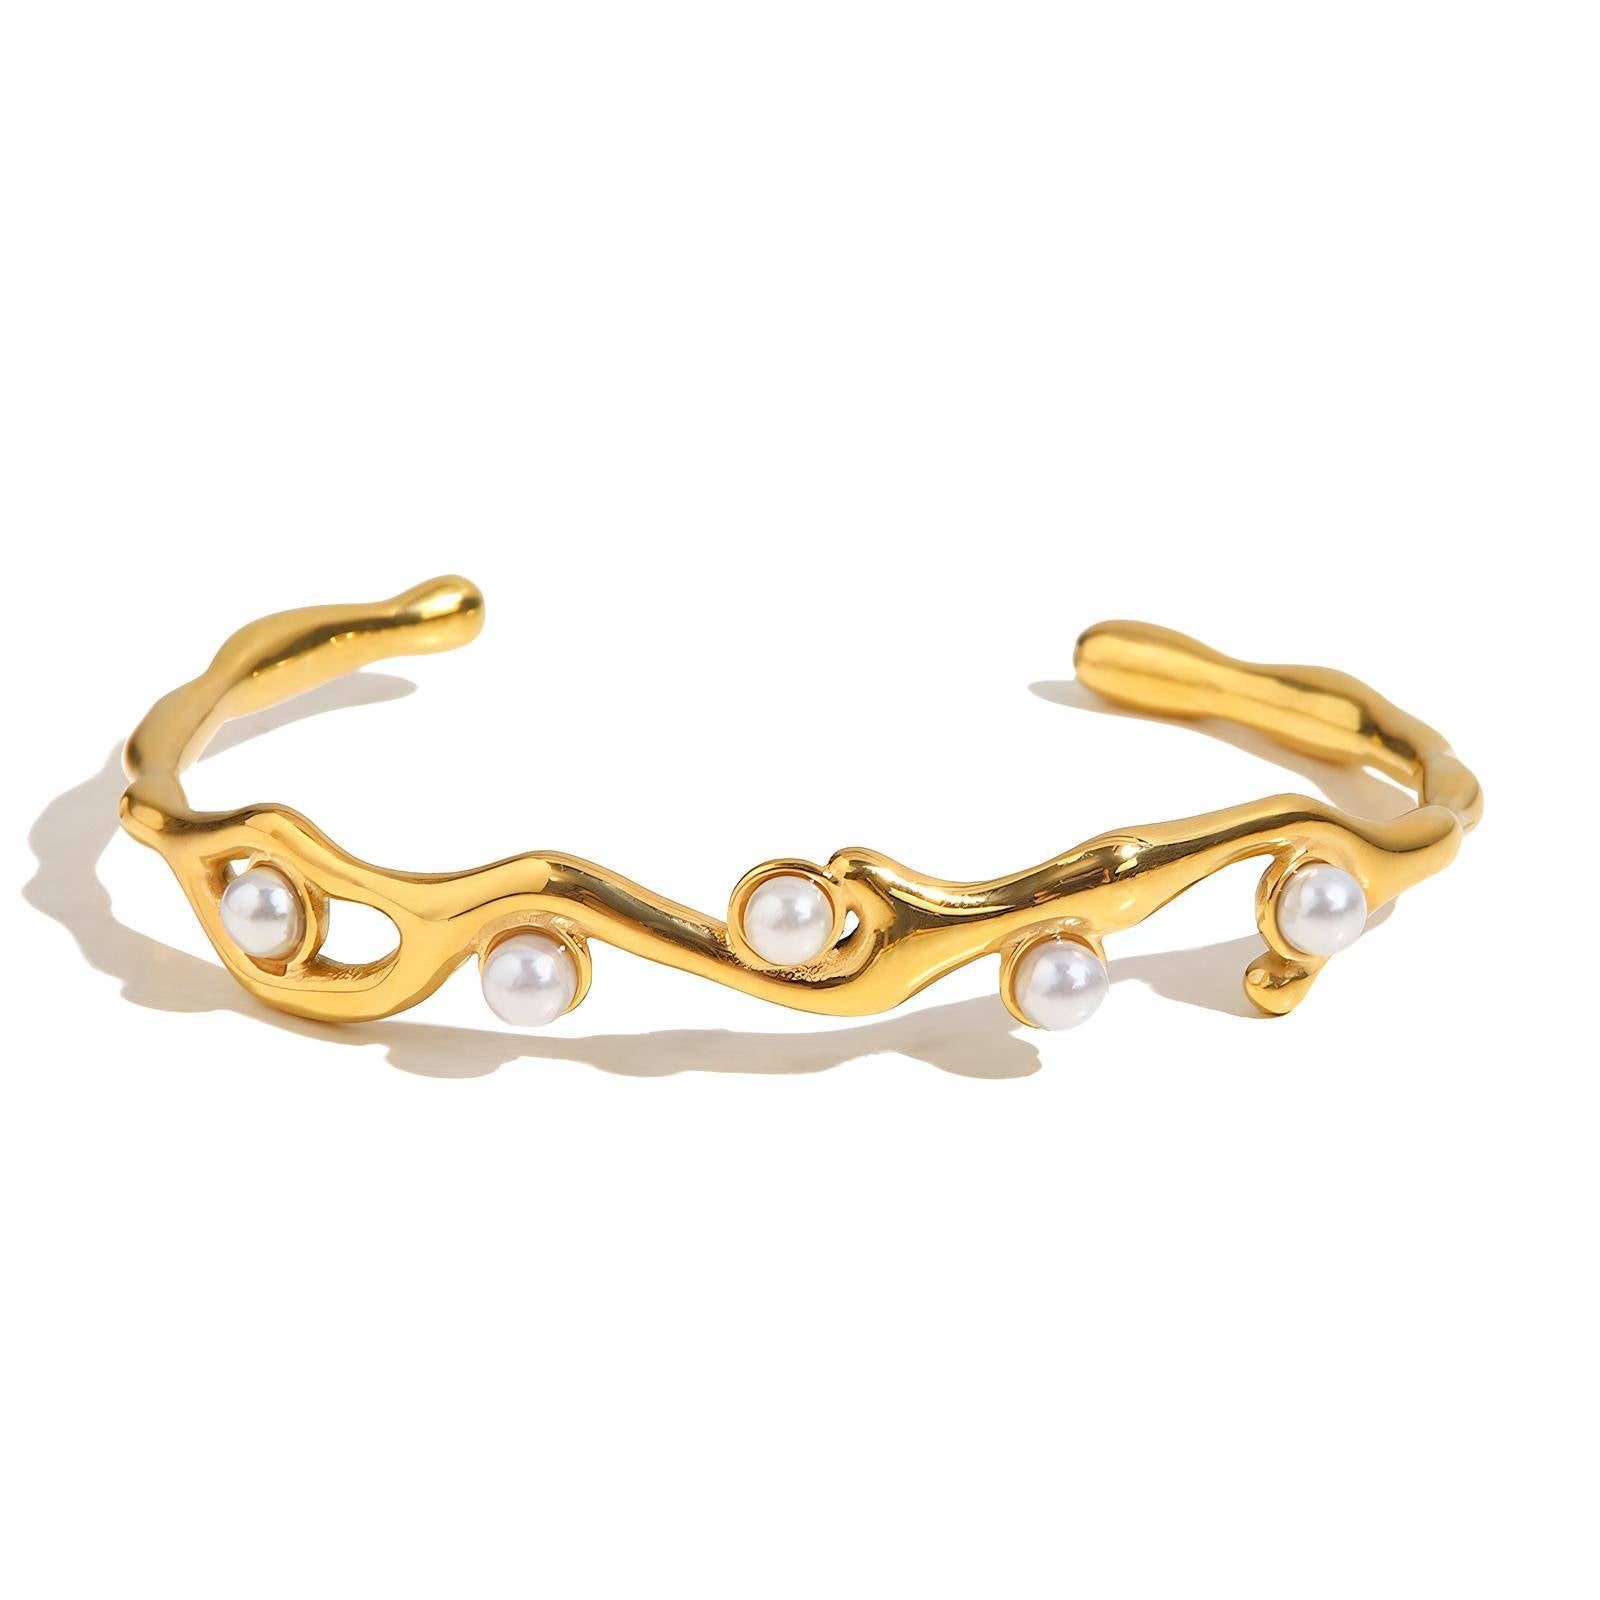 Diane 18k gold plated stainless steel pearl bracelet - Akalia